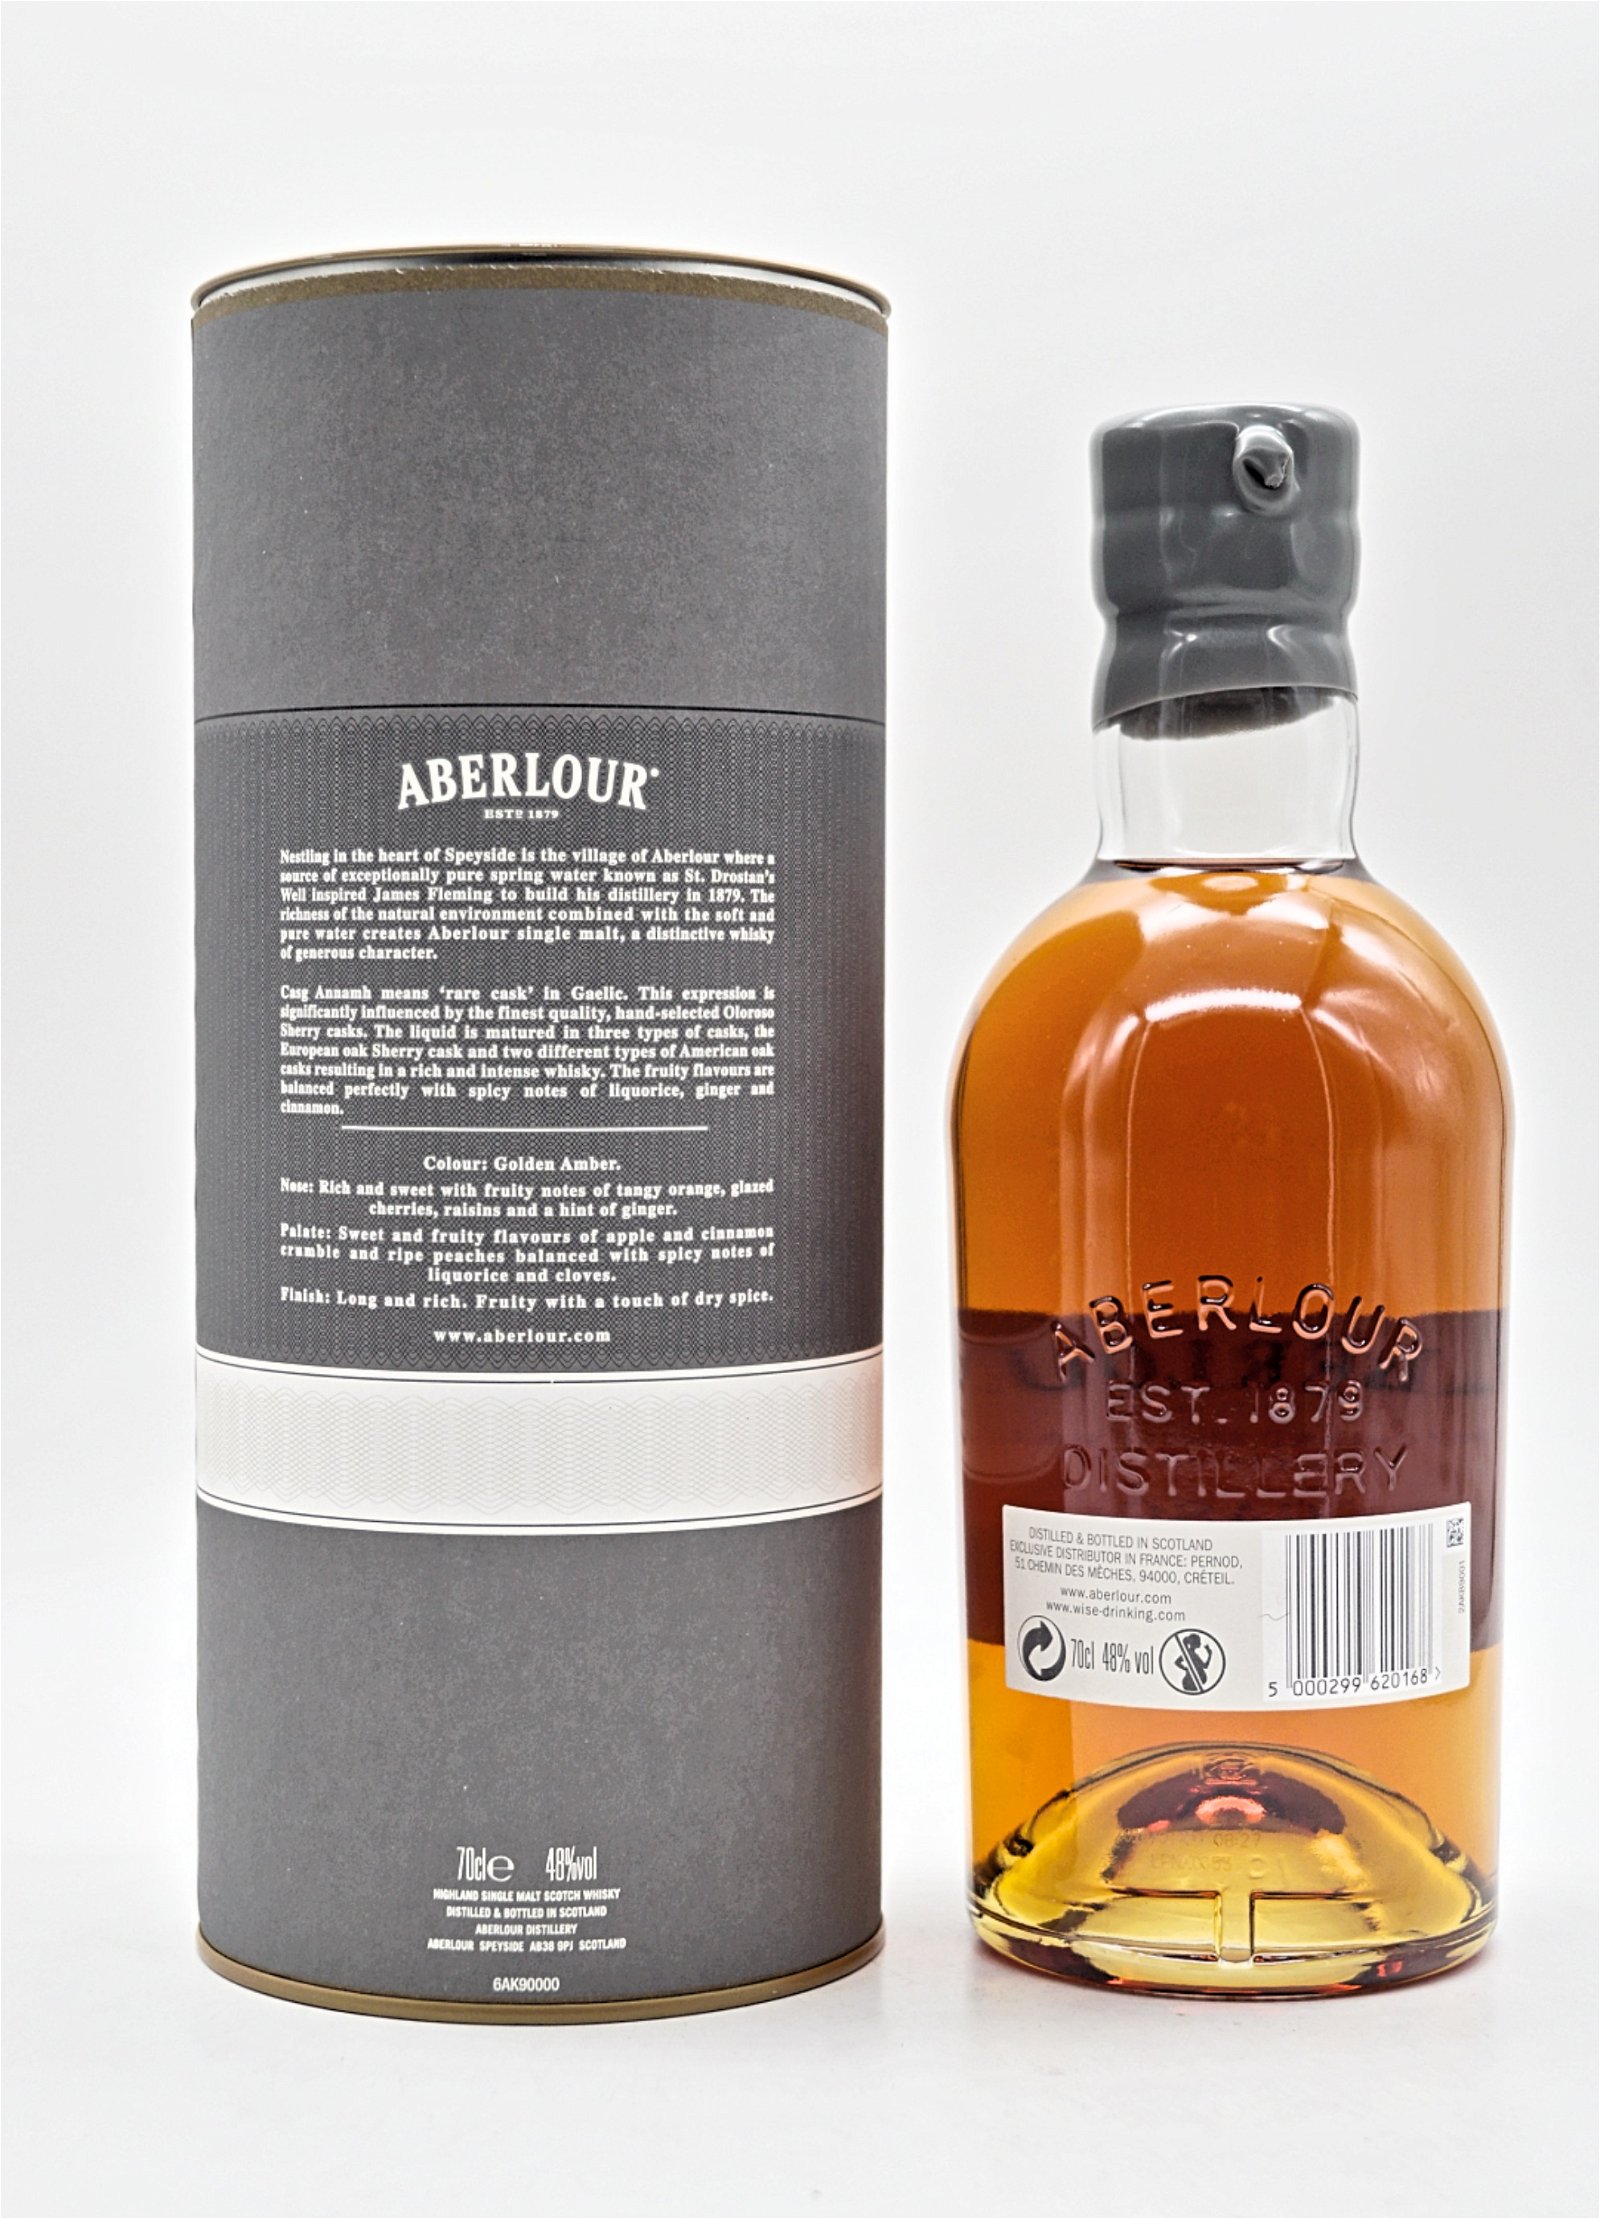 Aberlour Casg Annamh Batch 0001 Highland Single Malt Scotch Whisky